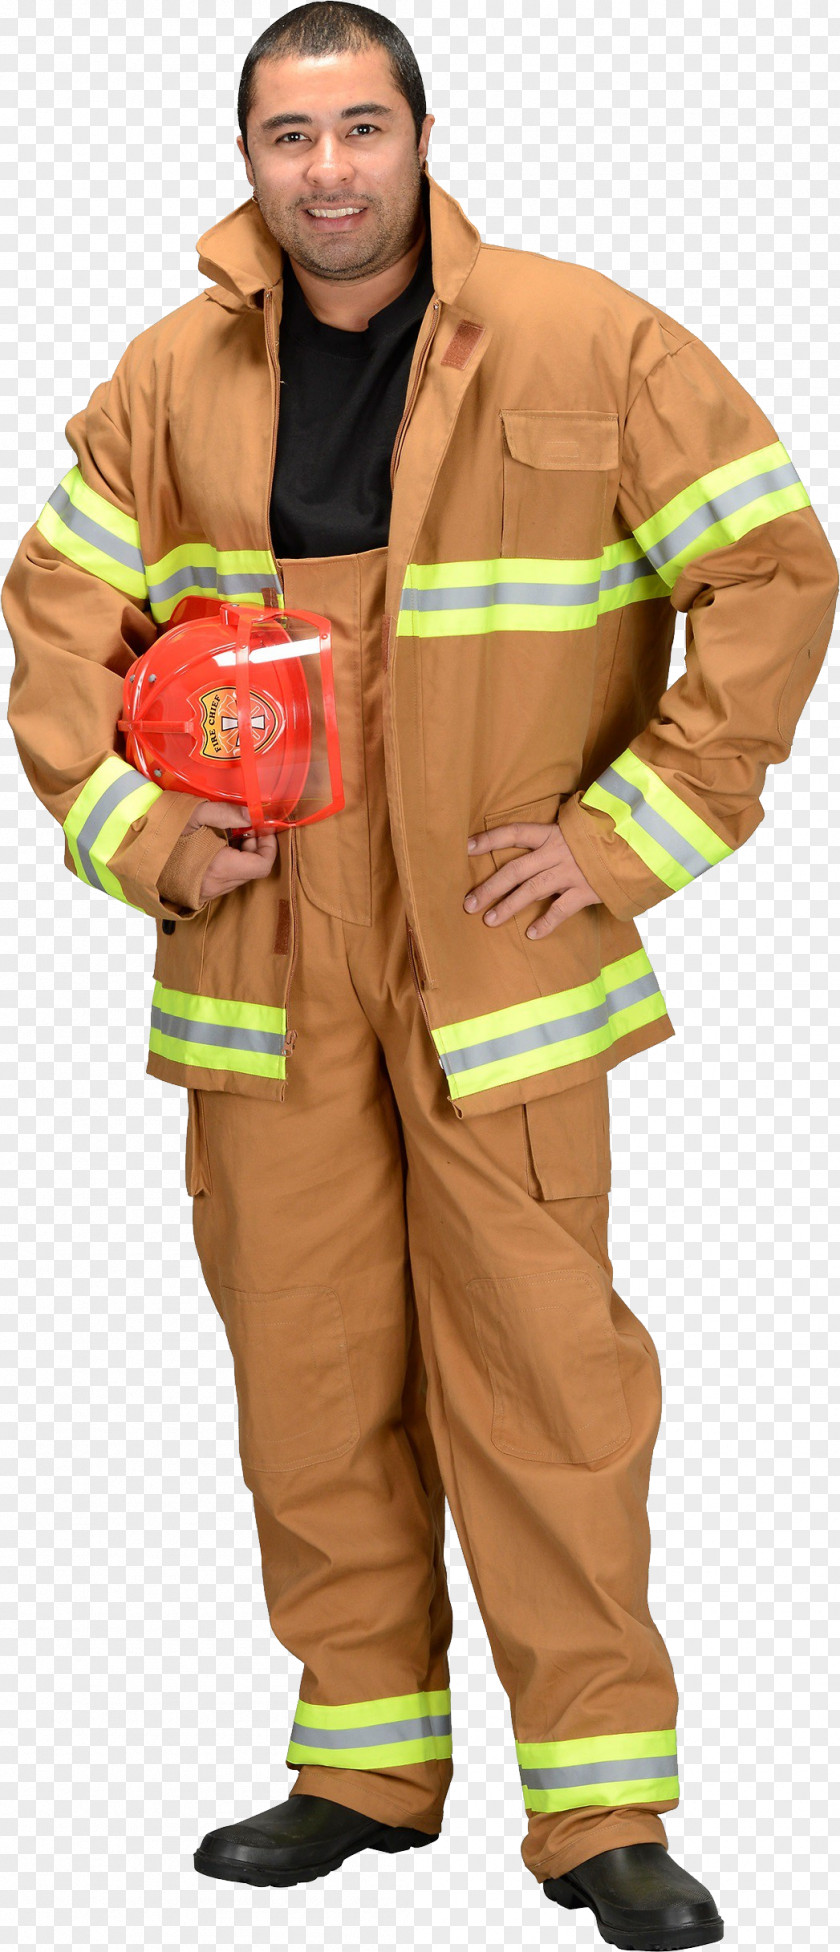 Firefighter Halloween Costume Bunker Gear Uniform PNG